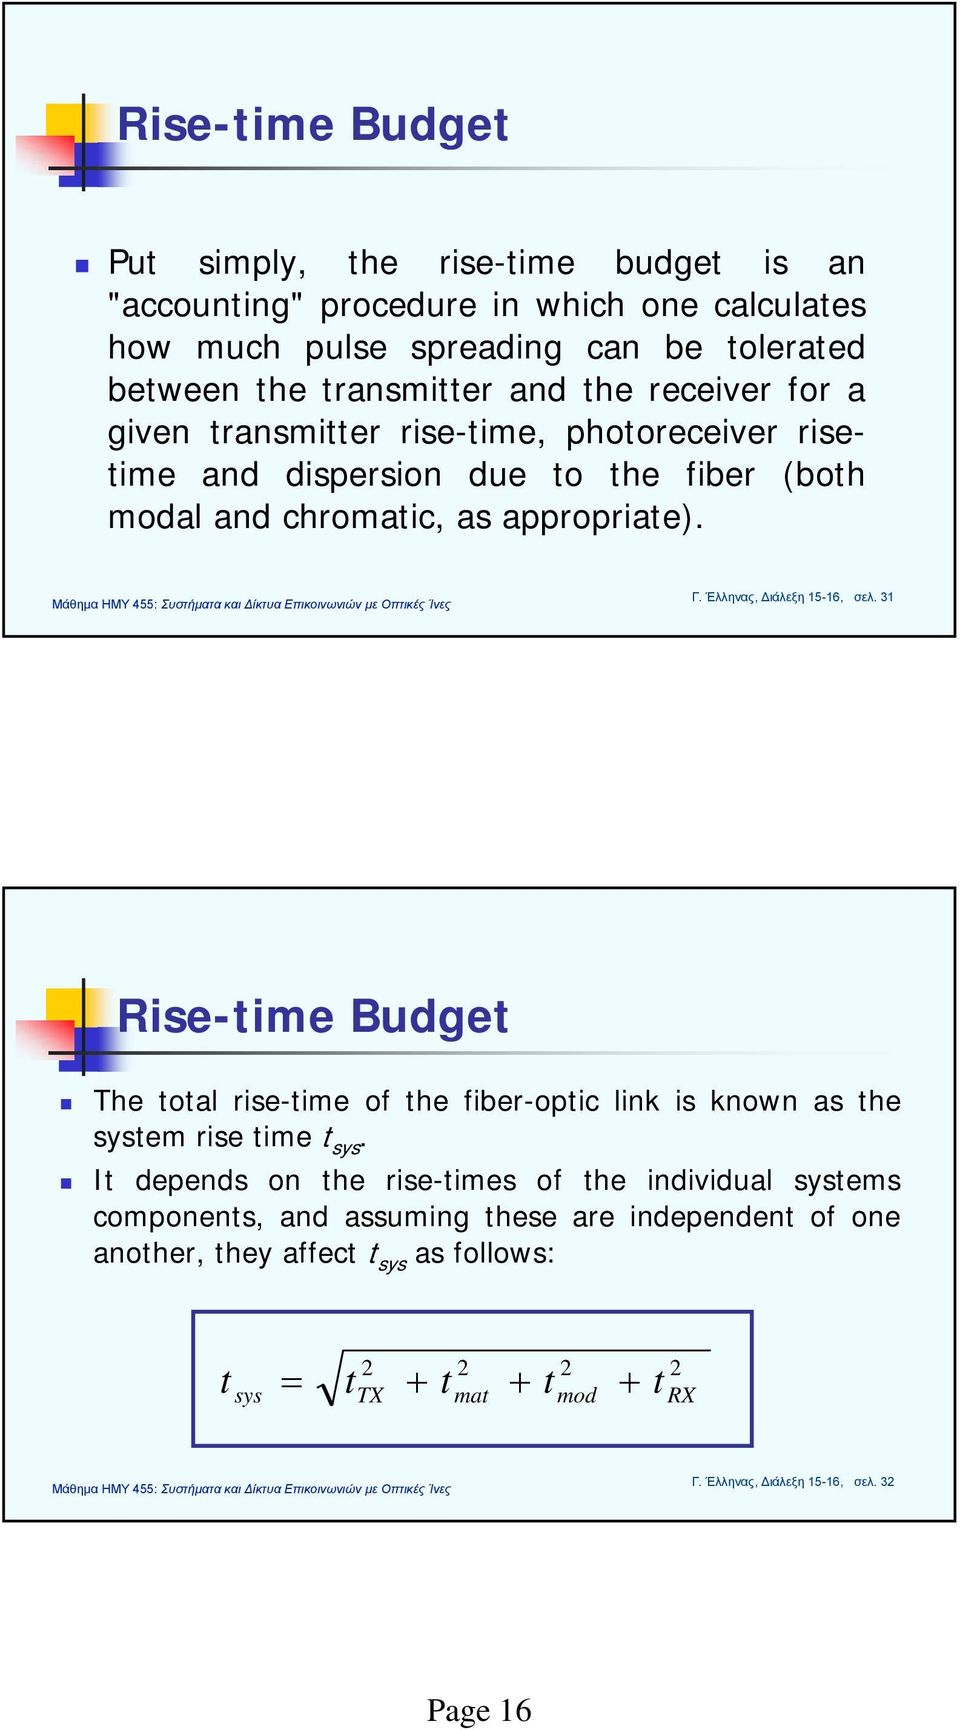 Έλληνας, Διάλεξη 15-16, σελ. 31 Rise-time Budget The total rise-time of the fiber-optic link is known as the system rise time t sys.